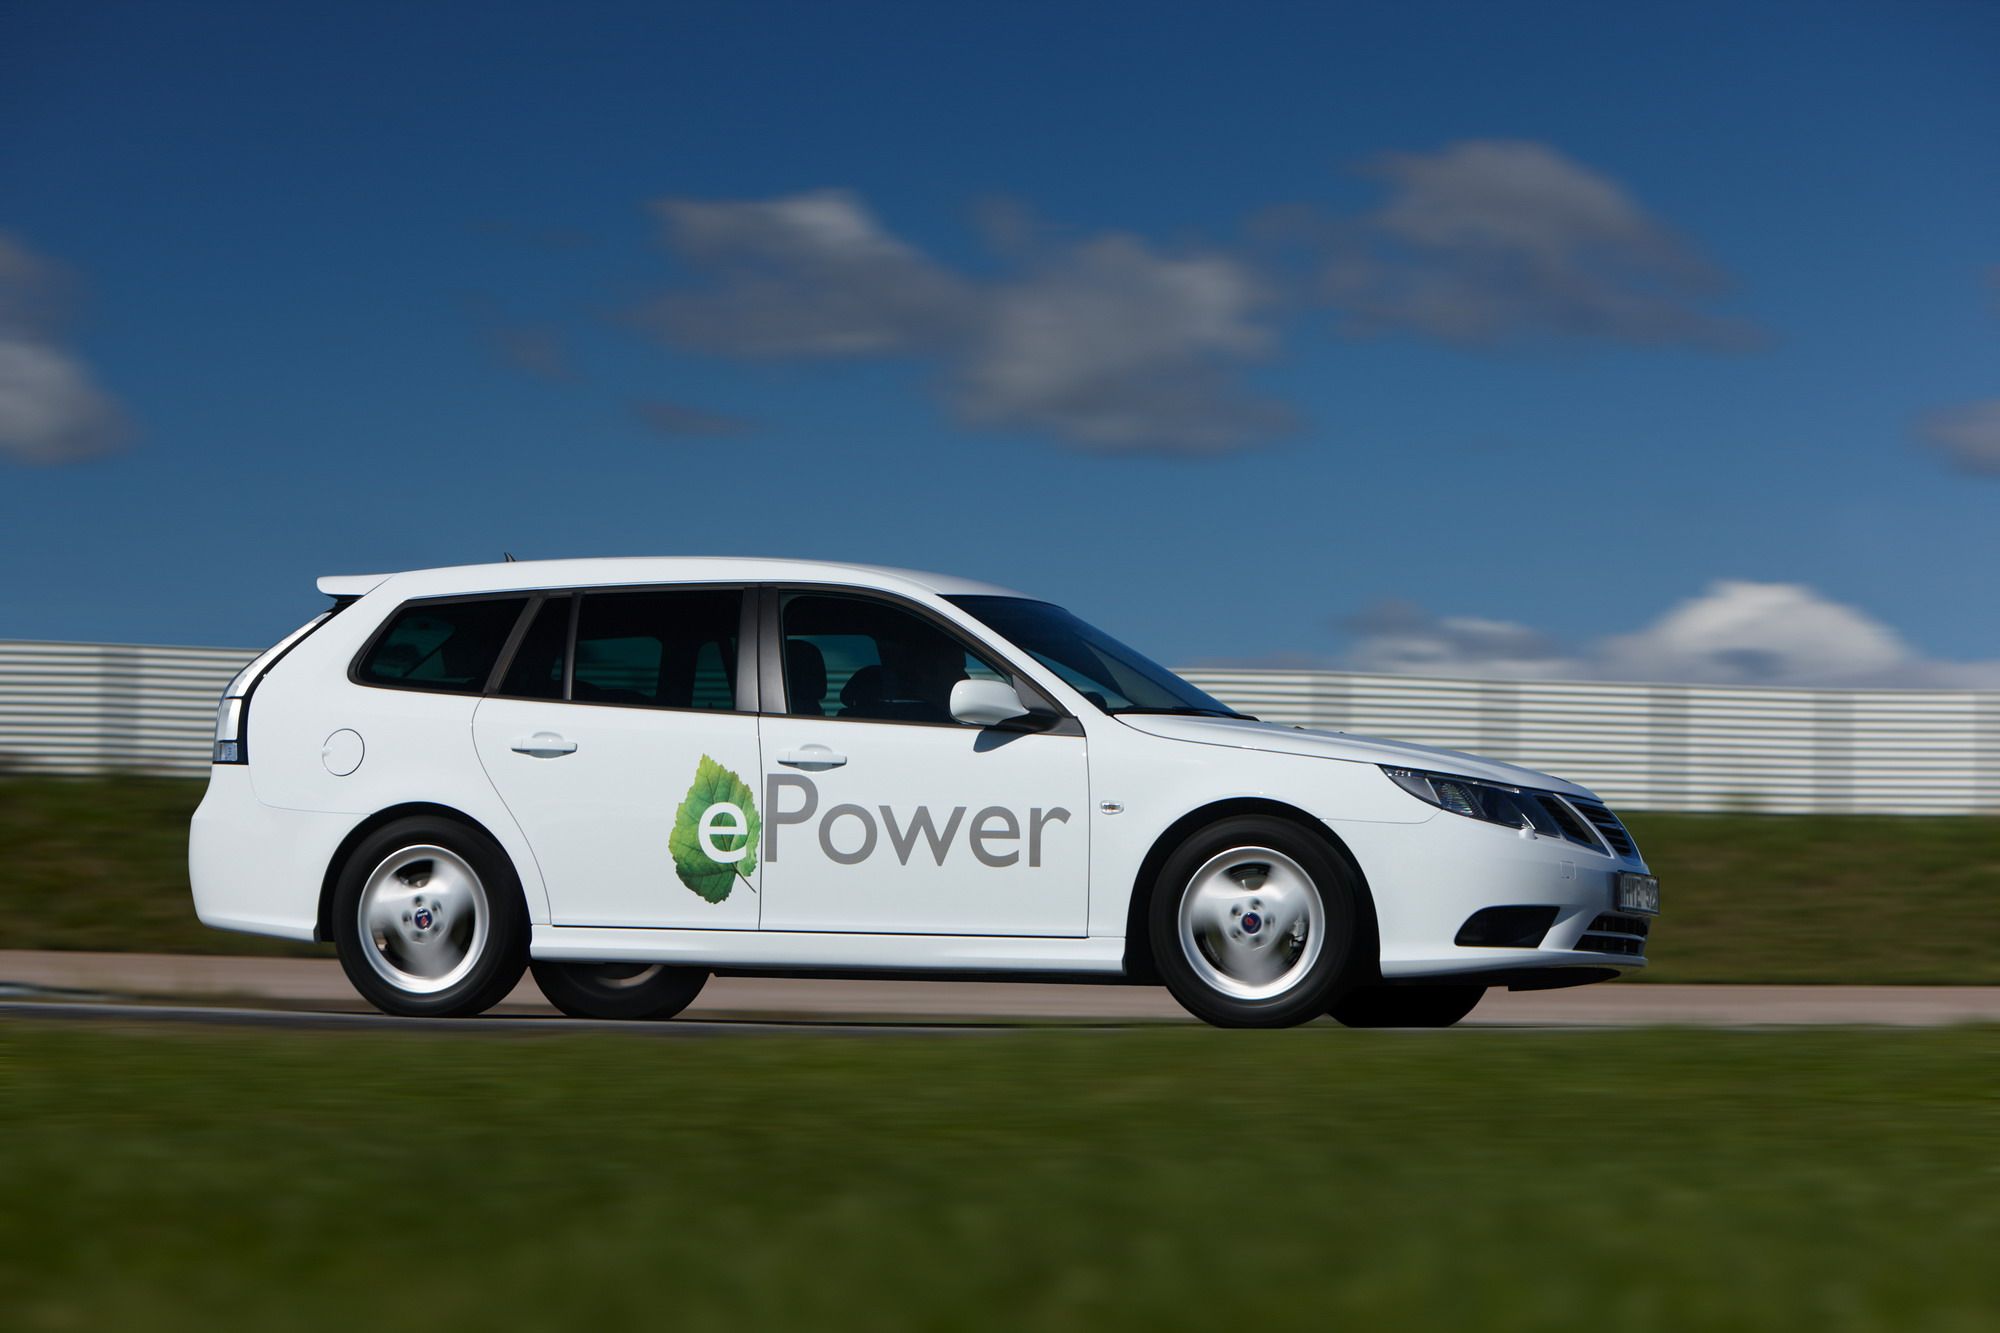 2011 Saab 9-3 ePower